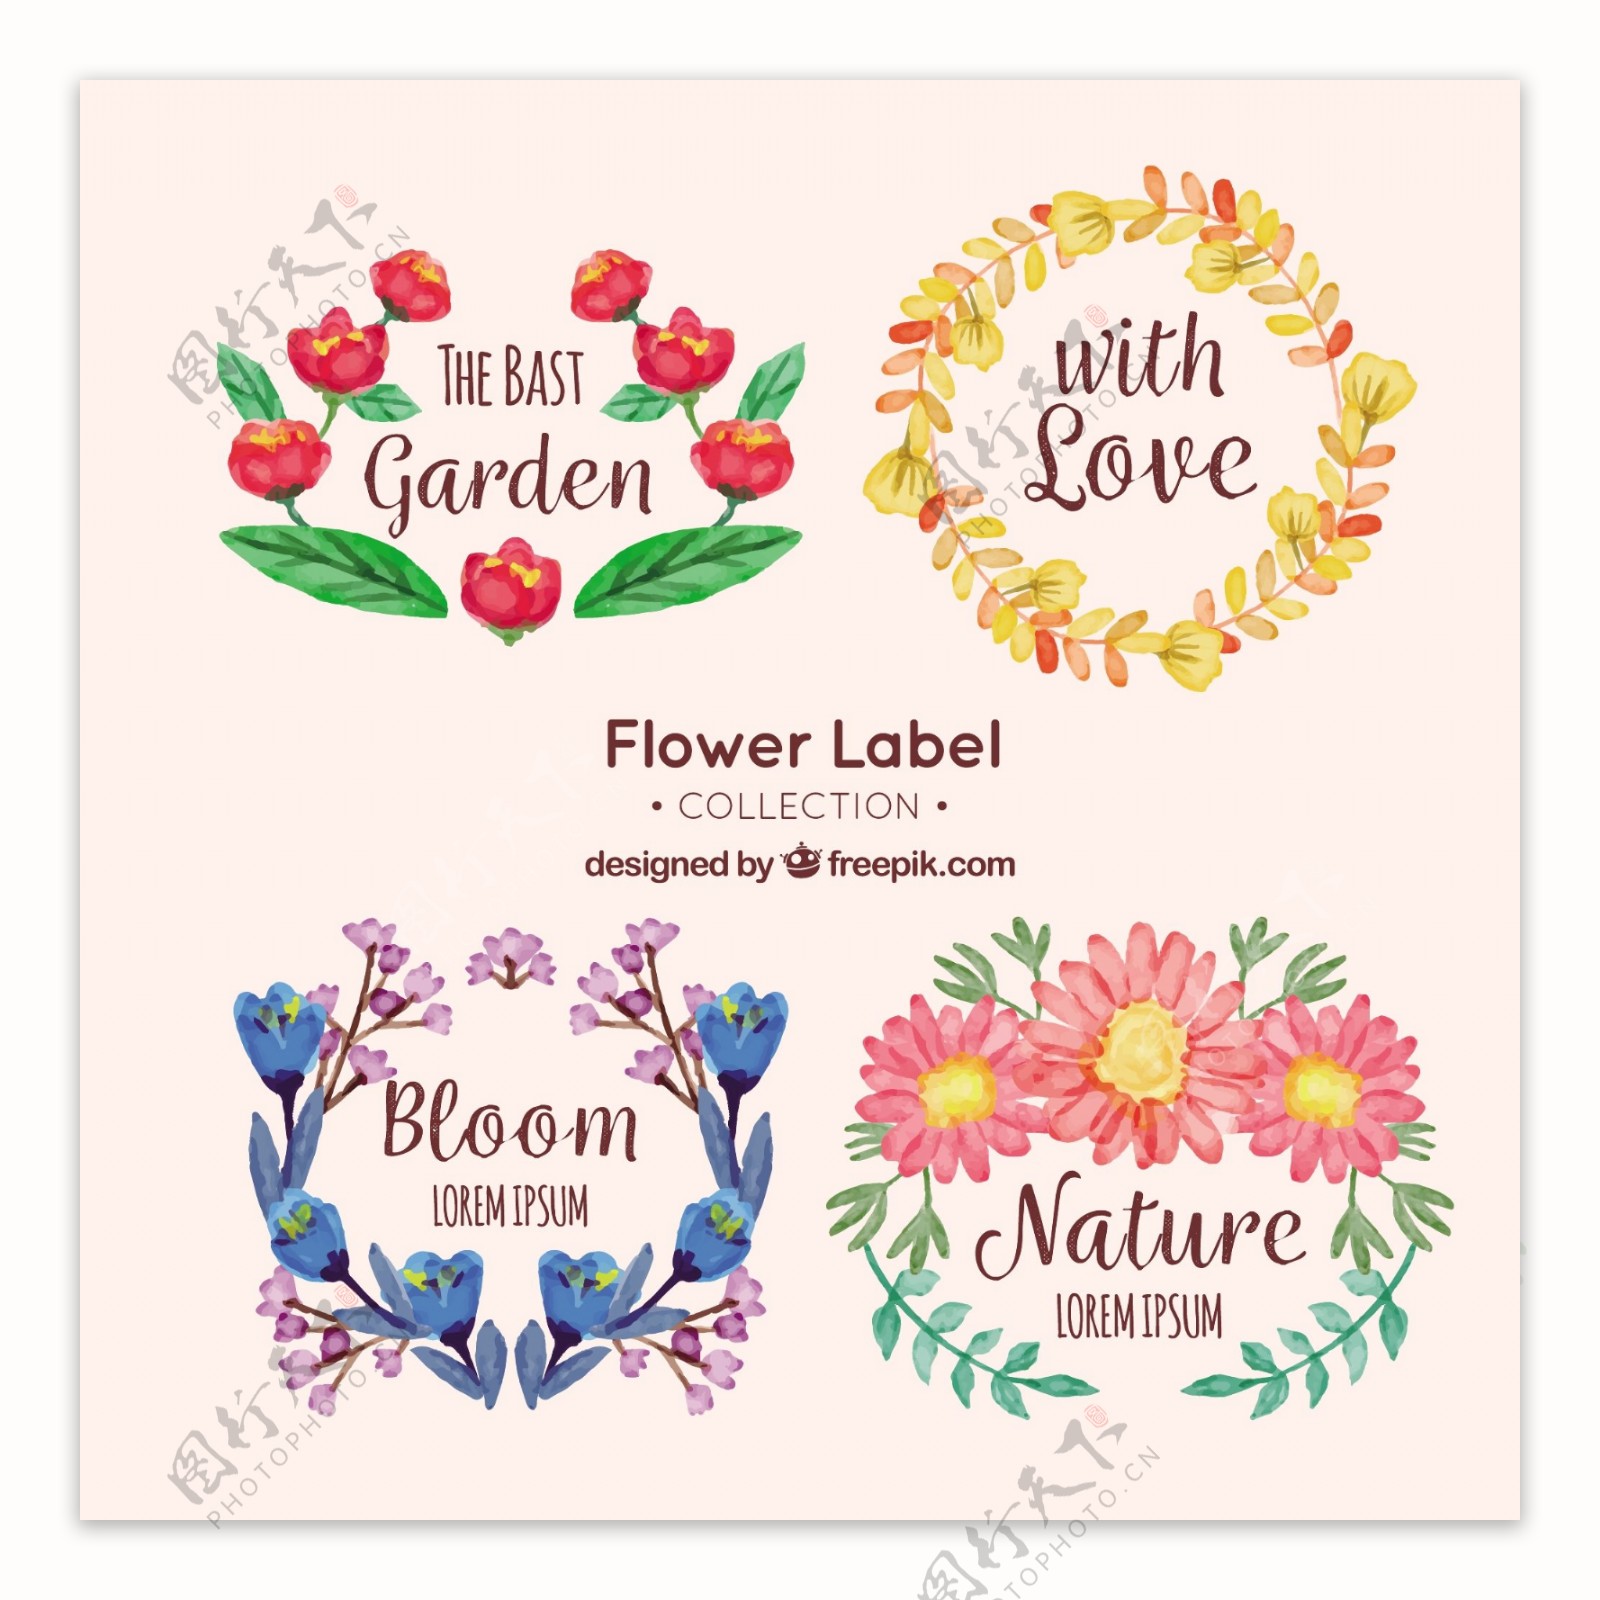 四种水彩风格花卉标签